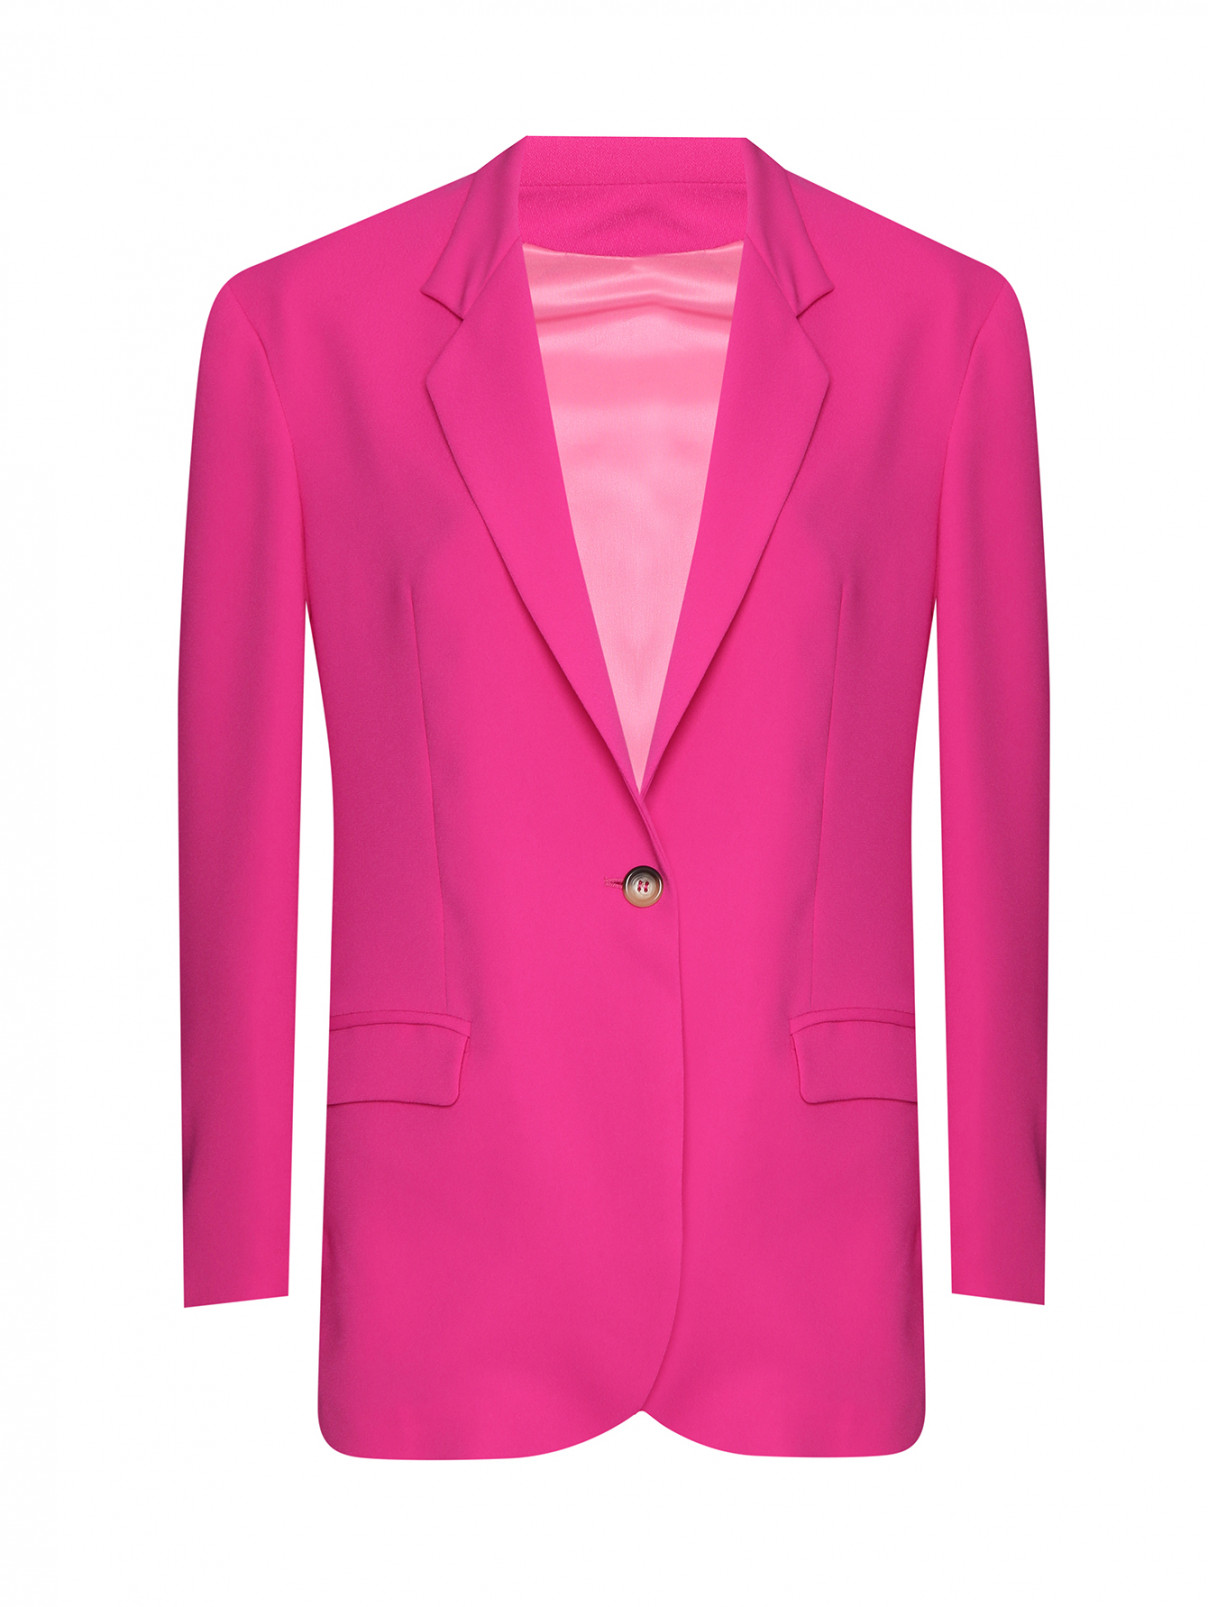 Однобортный жакет на пуговице Forte Dei Marmi Couture  –  Общий вид  – Цвет:  Розовый